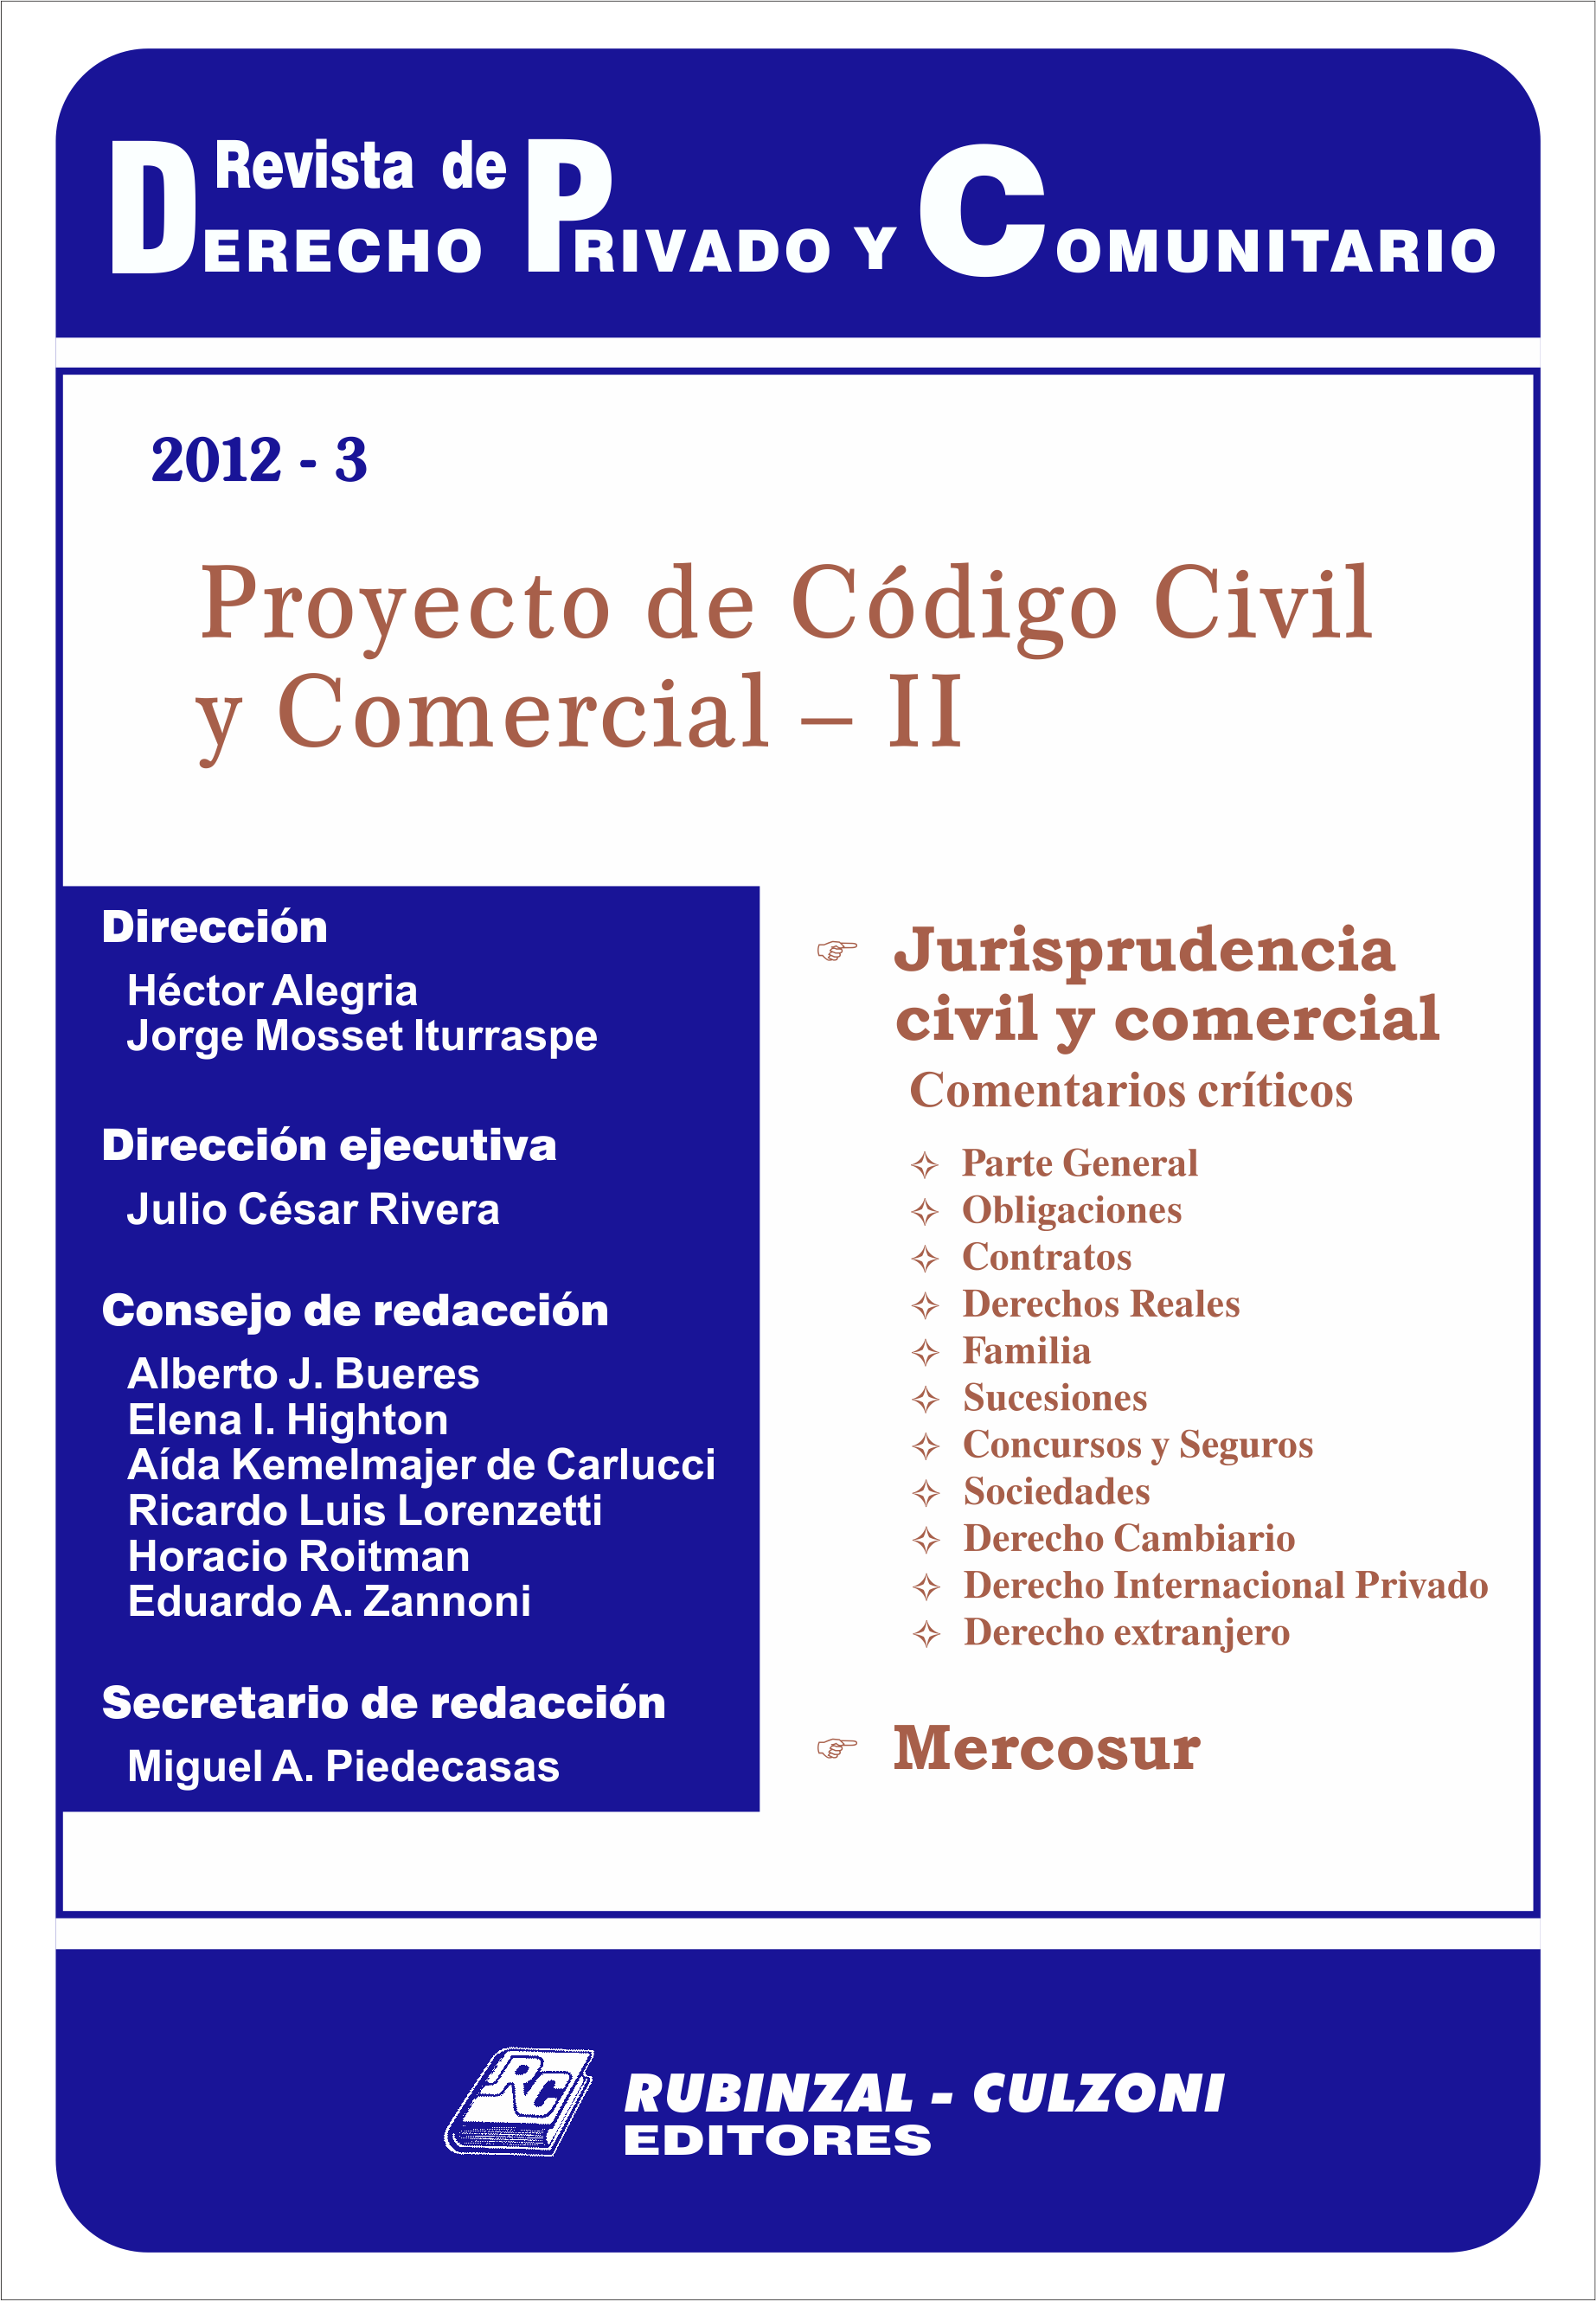 Revista de Derecho Privado y Comunitario - Proyecto de Código Civil y Comercial - II